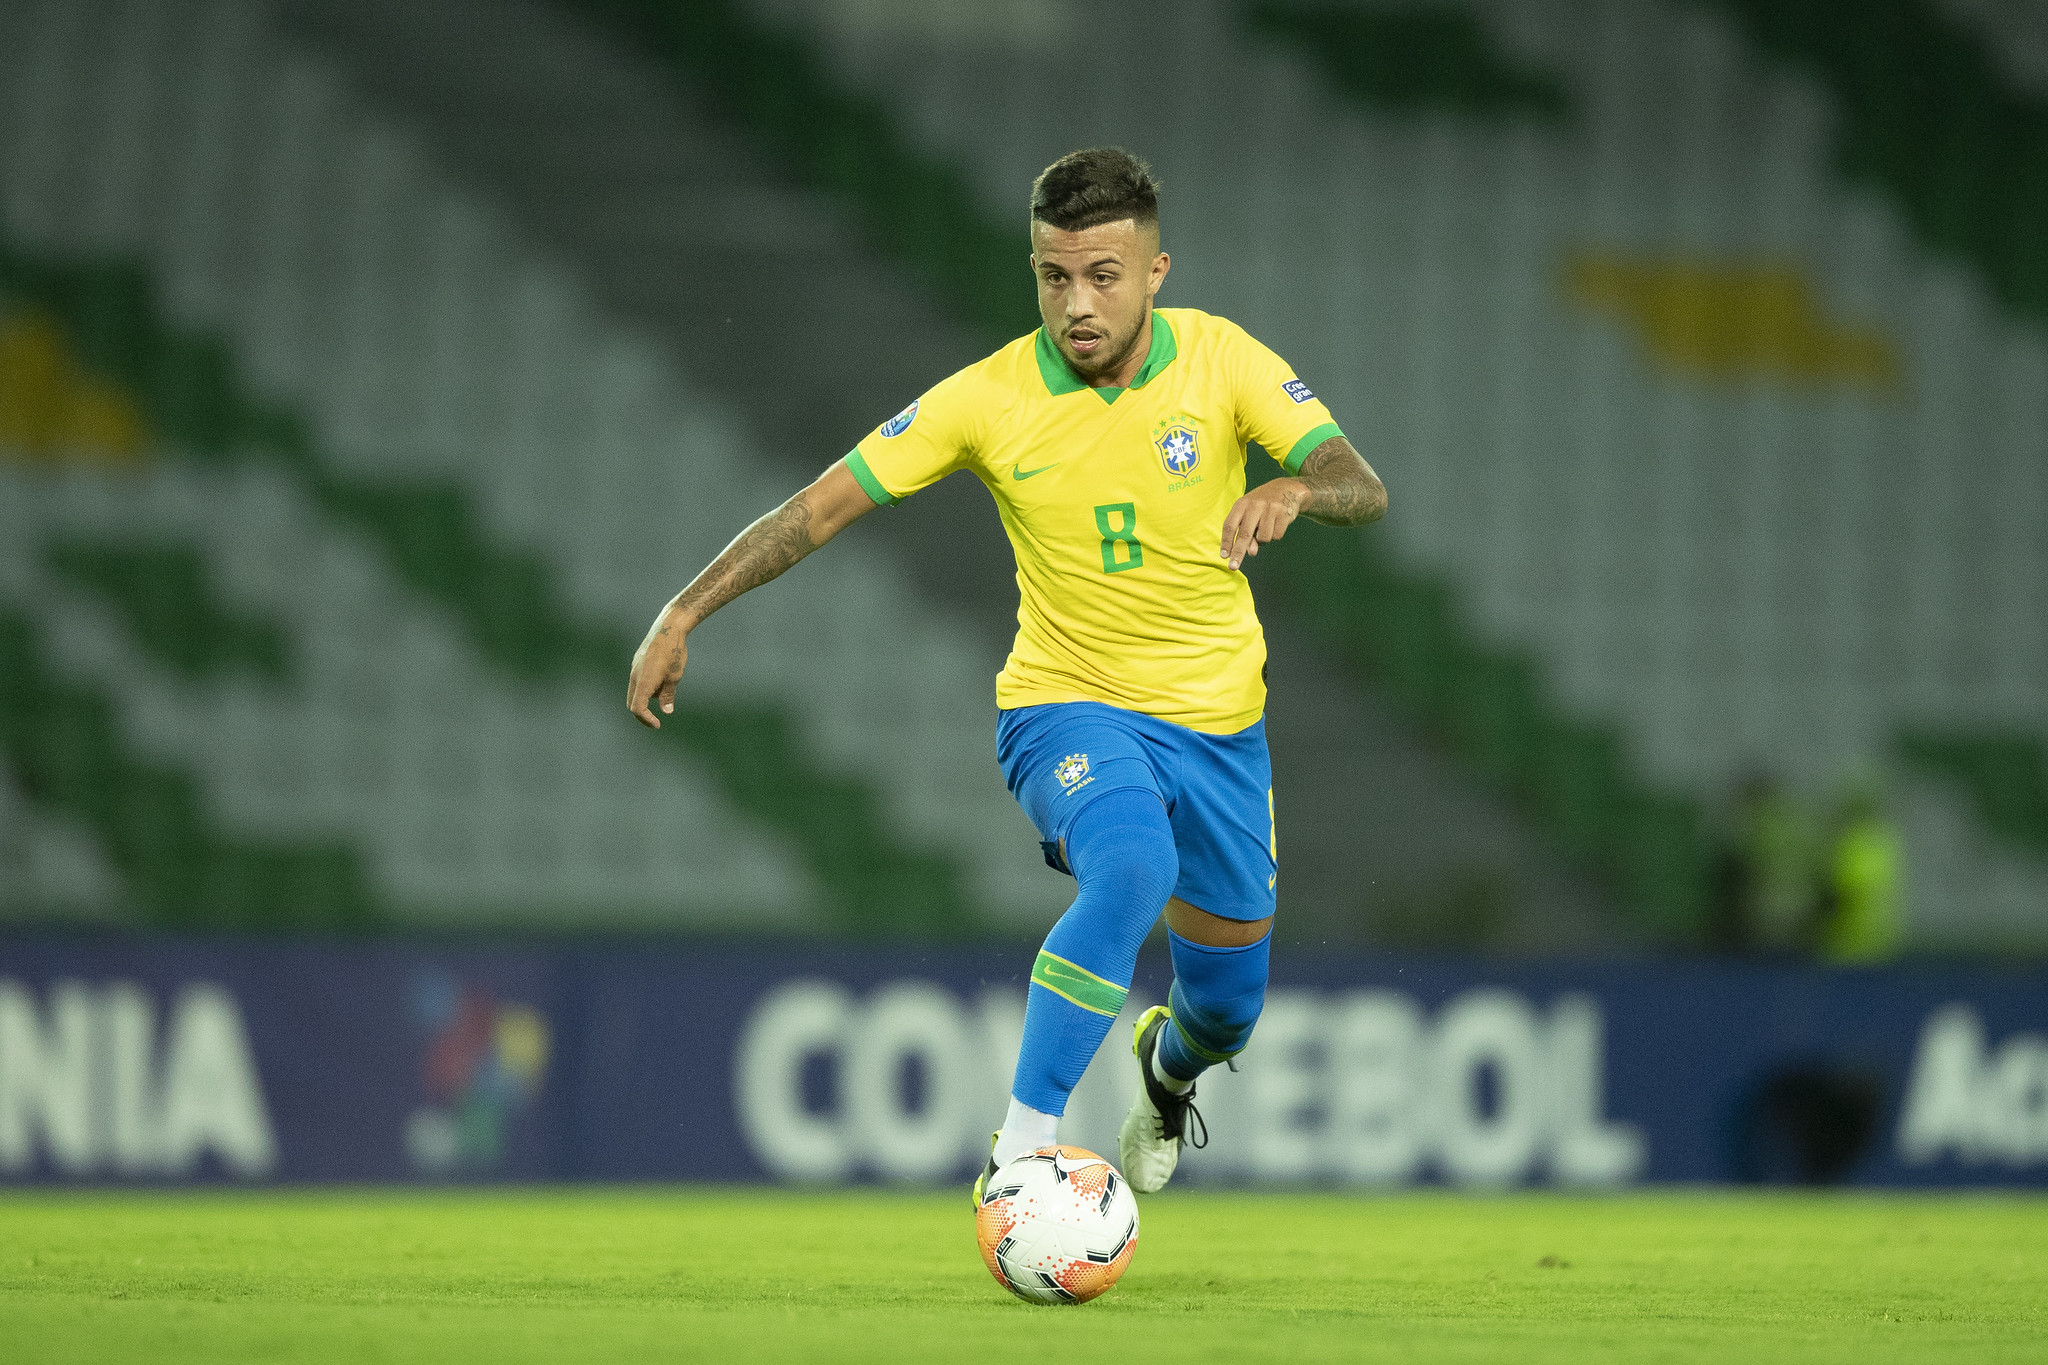 10º - Matheus Henrique: 23 anos – Meio-campista – Grêmio – Valor de mercado: 15 milhões de euros (cerca de R$ 91,8 milhões na cotação atual).